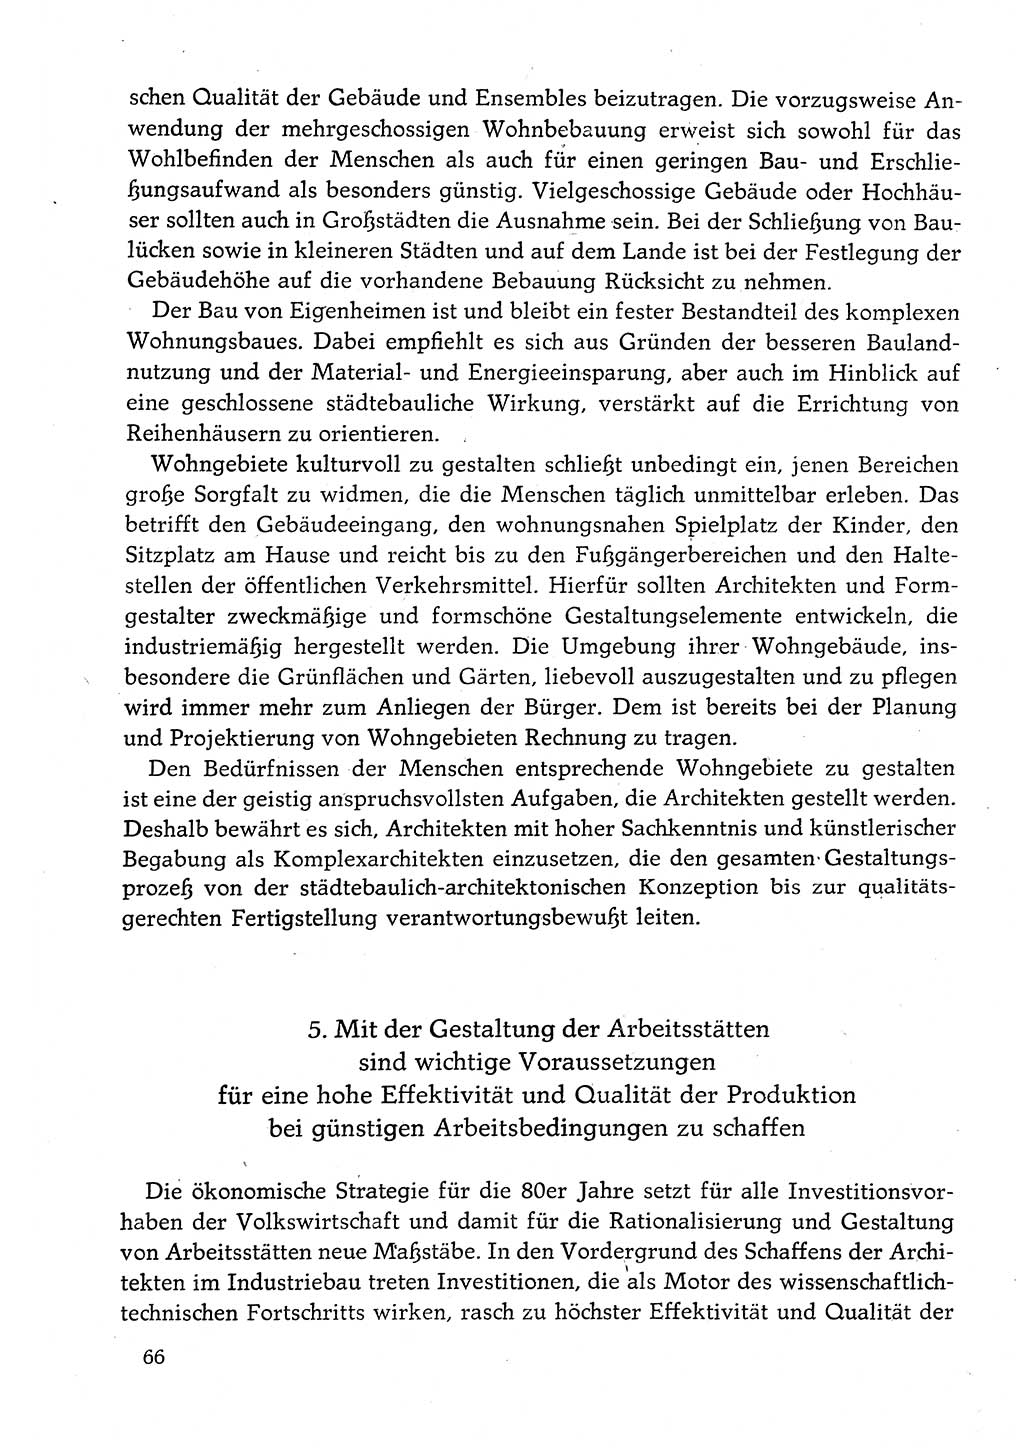 Dokumente der Sozialistischen Einheitspartei Deutschlands (SED) [Deutsche Demokratische Republik (DDR)] 1982-1983, Seite 66 (Dok. SED DDR 1982-1983, S. 66)